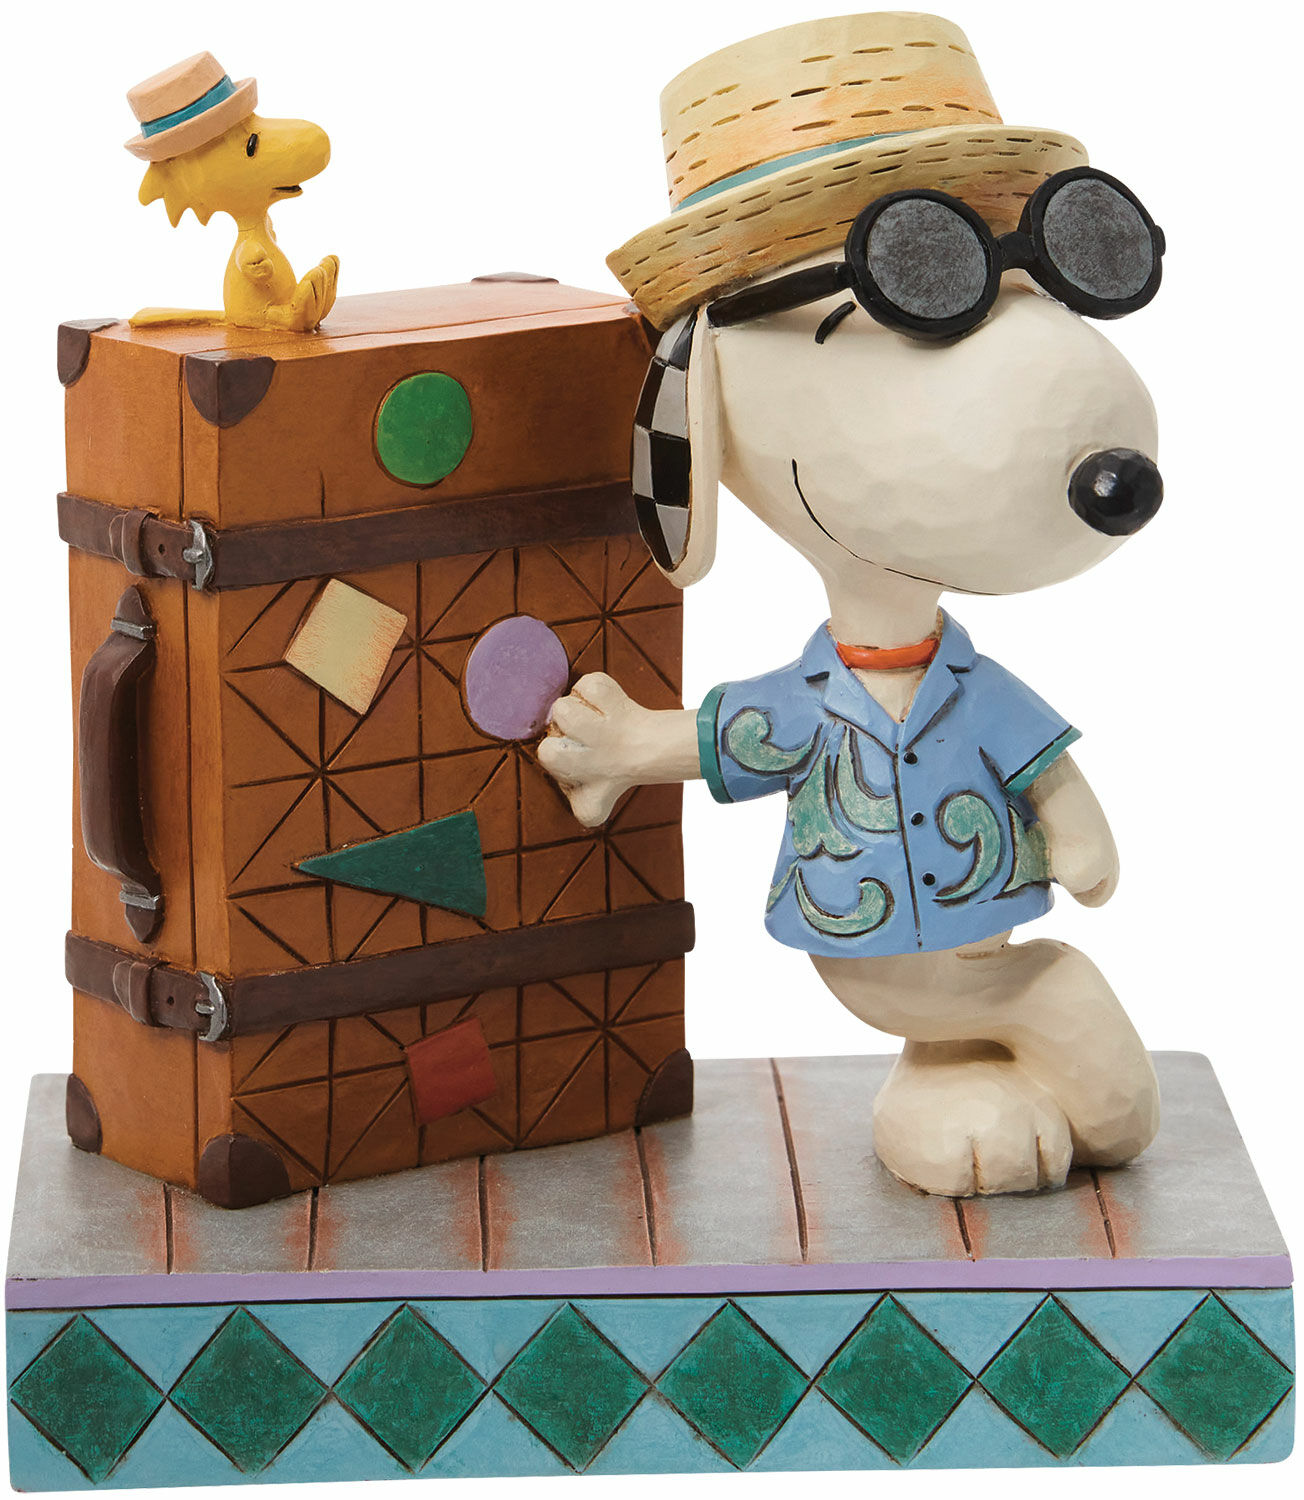 Sculptuur "Snoopy en Woodstock op reis", gegoten von Jim Shore